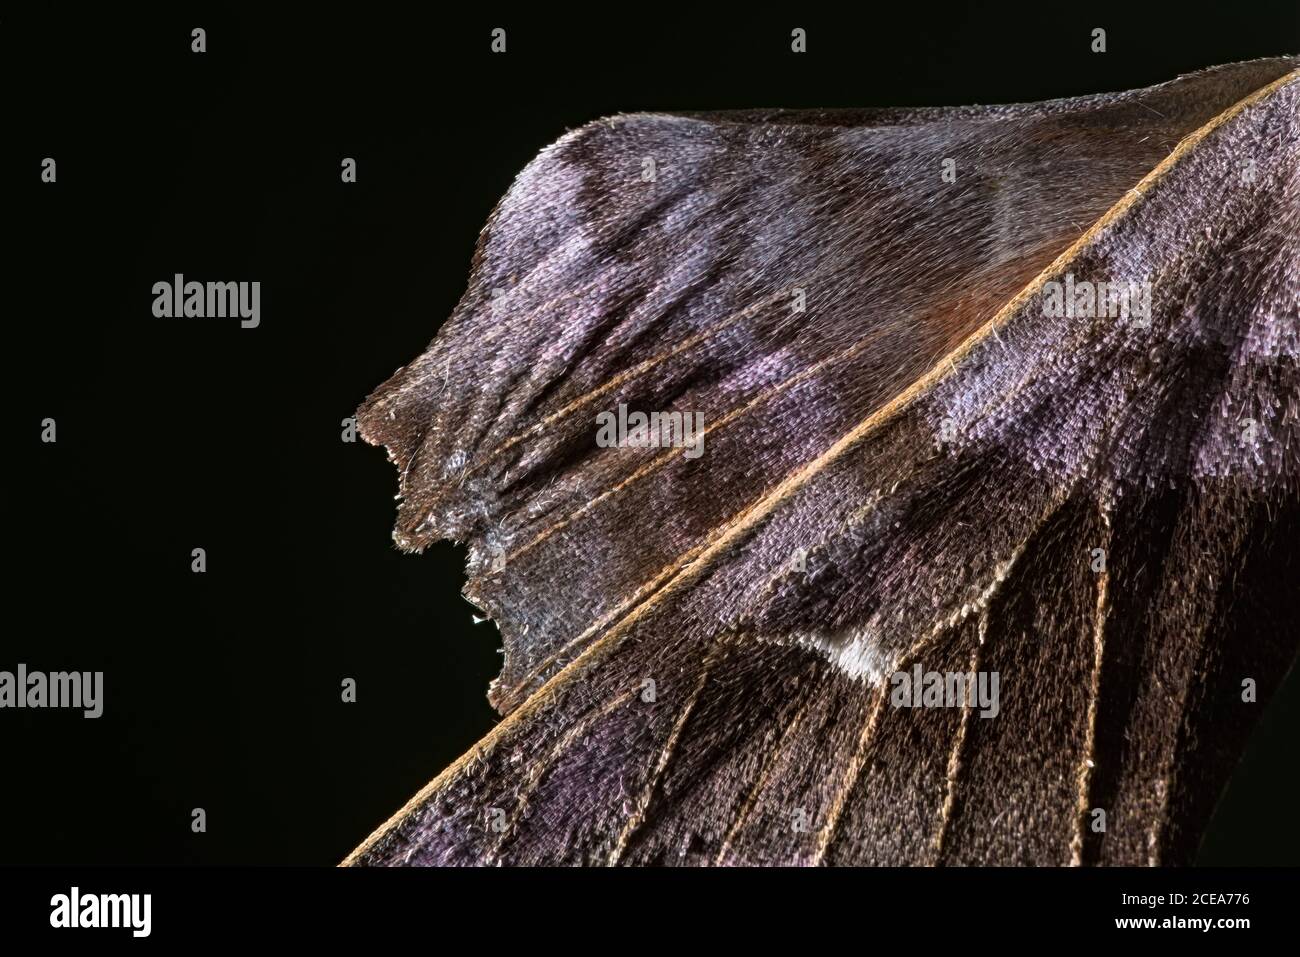 5 - gros plan d'une partie de l'aile de papillon de peuplier. Texture inhabituelle et couleur pourpre. Arrière-plan noir pur et espace de copie. Utilisation créative de la lumière. Banque D'Images